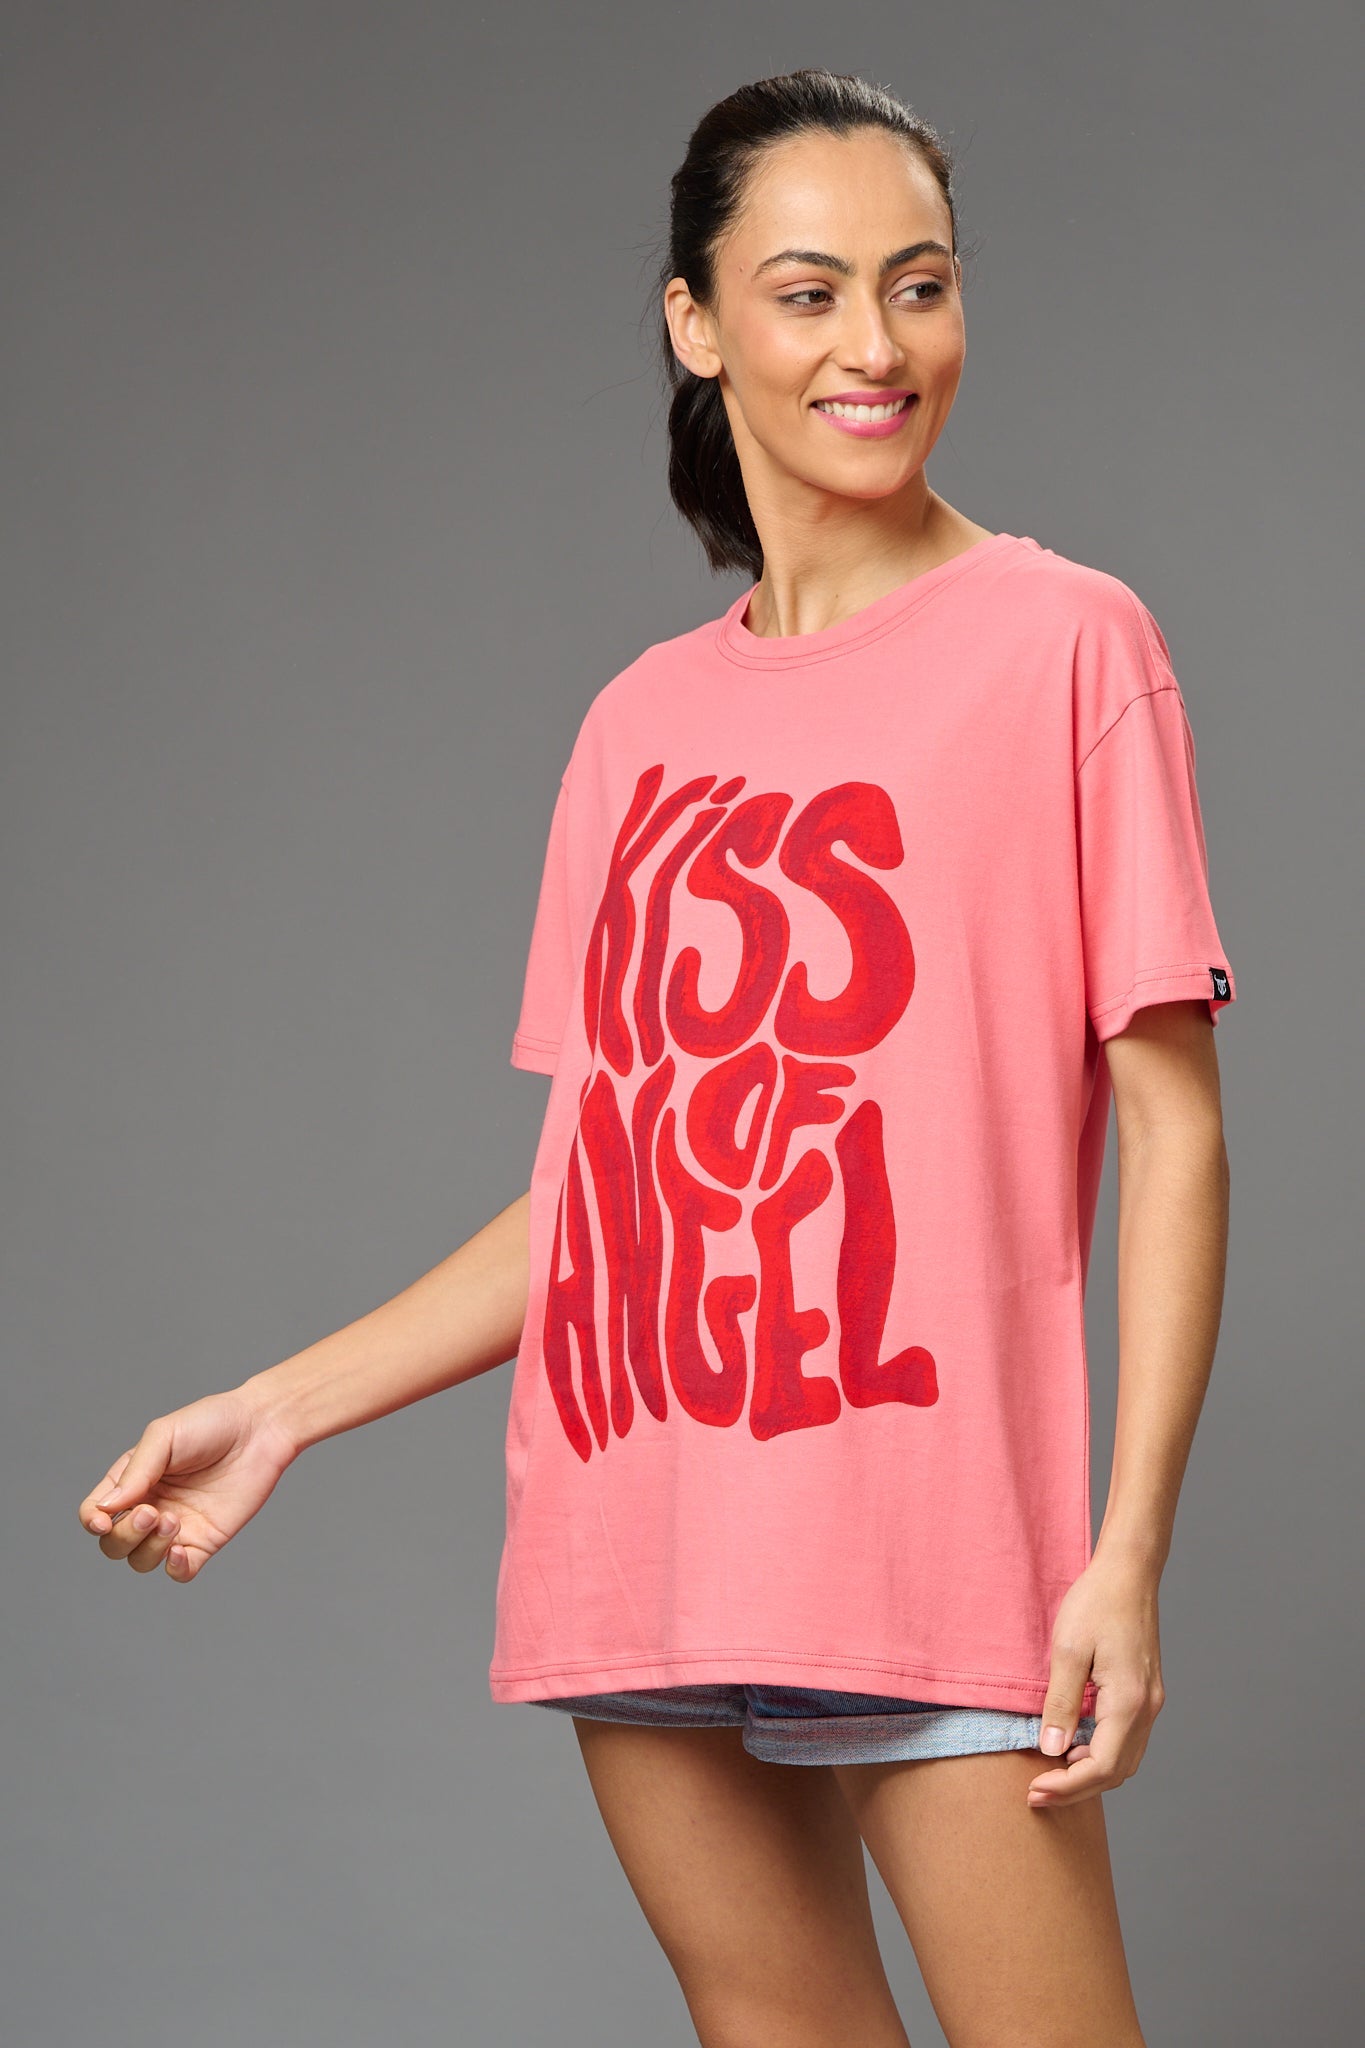 Kiss of Angel Printed Oversized T-Shirt for Women - Go Devil